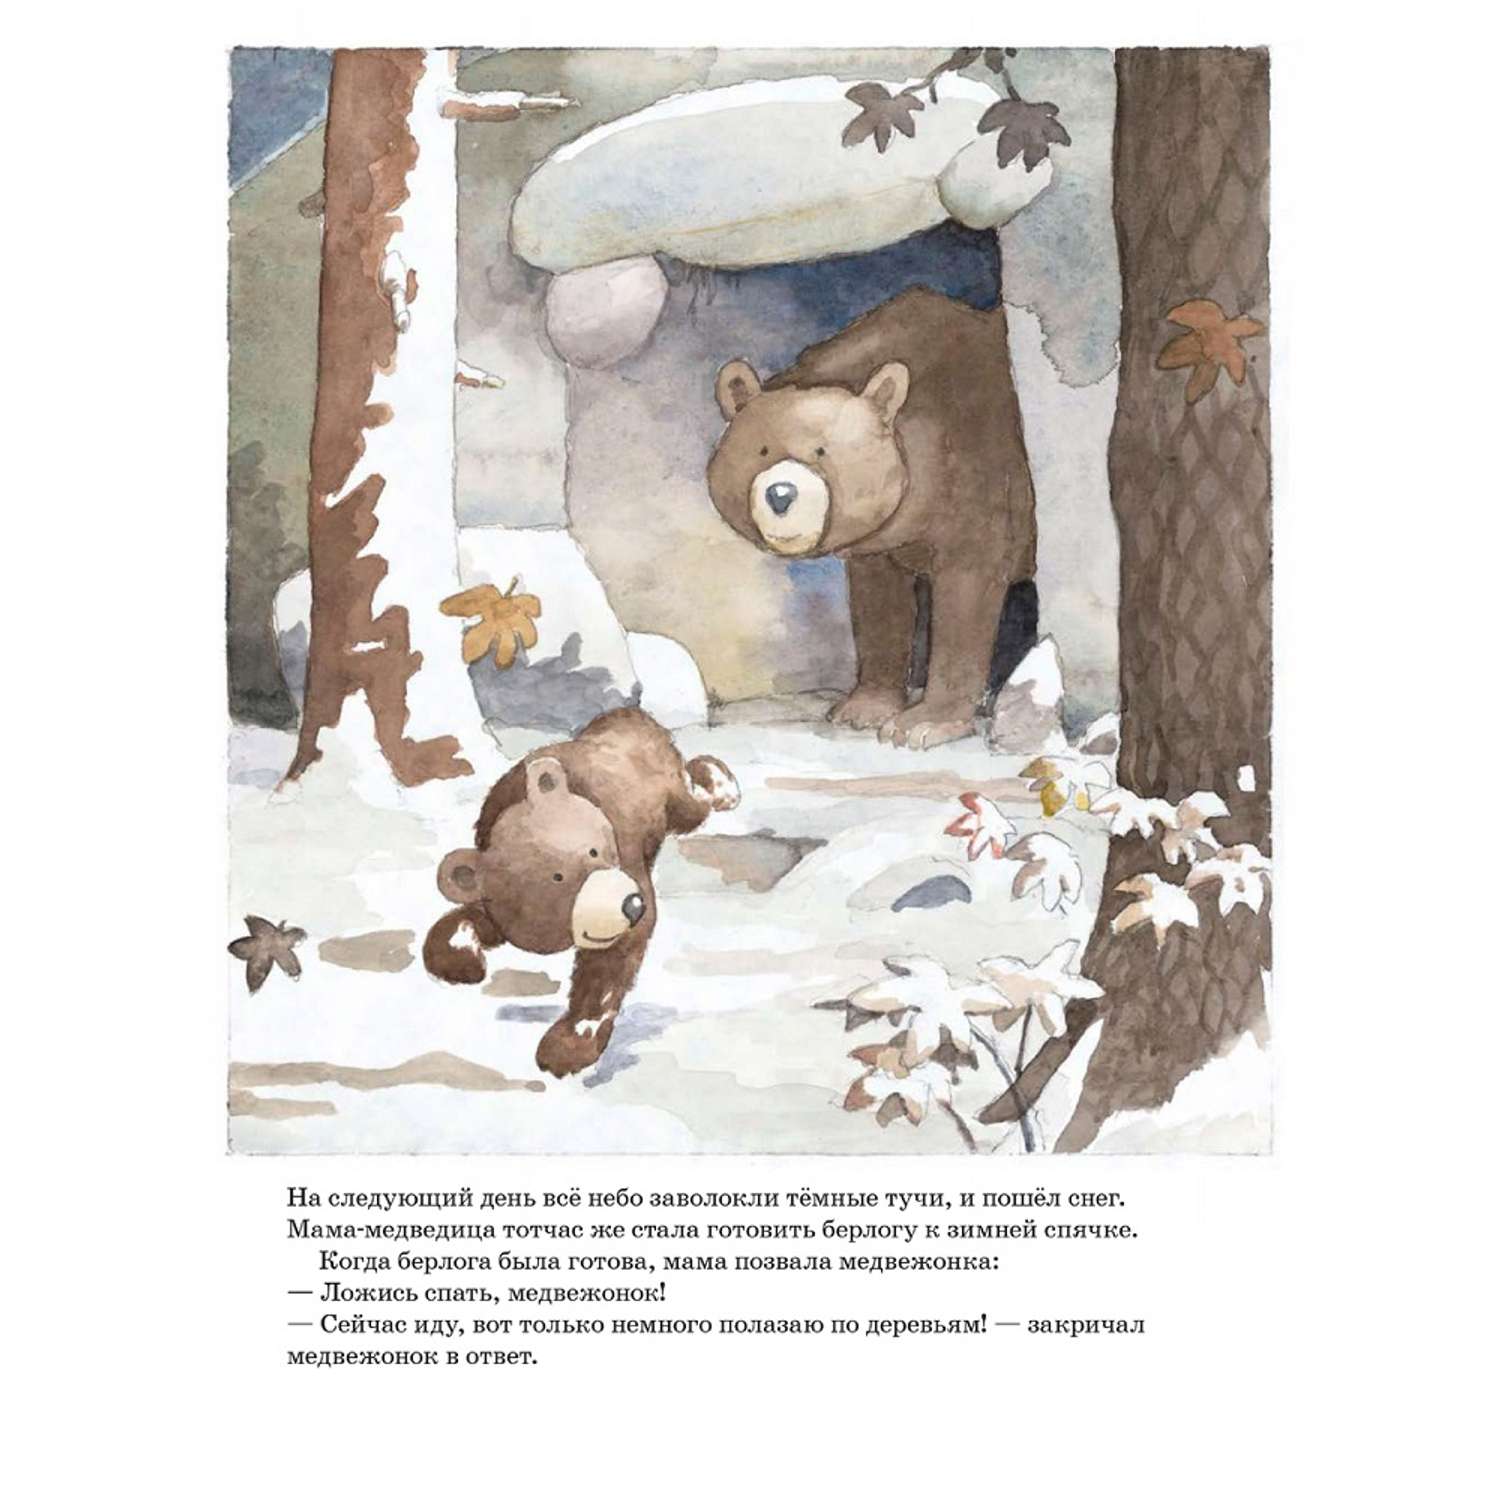 Книга Добрая книга Ложись спать медвежонок! Иллюстрации Яна Могенсена - фото 7